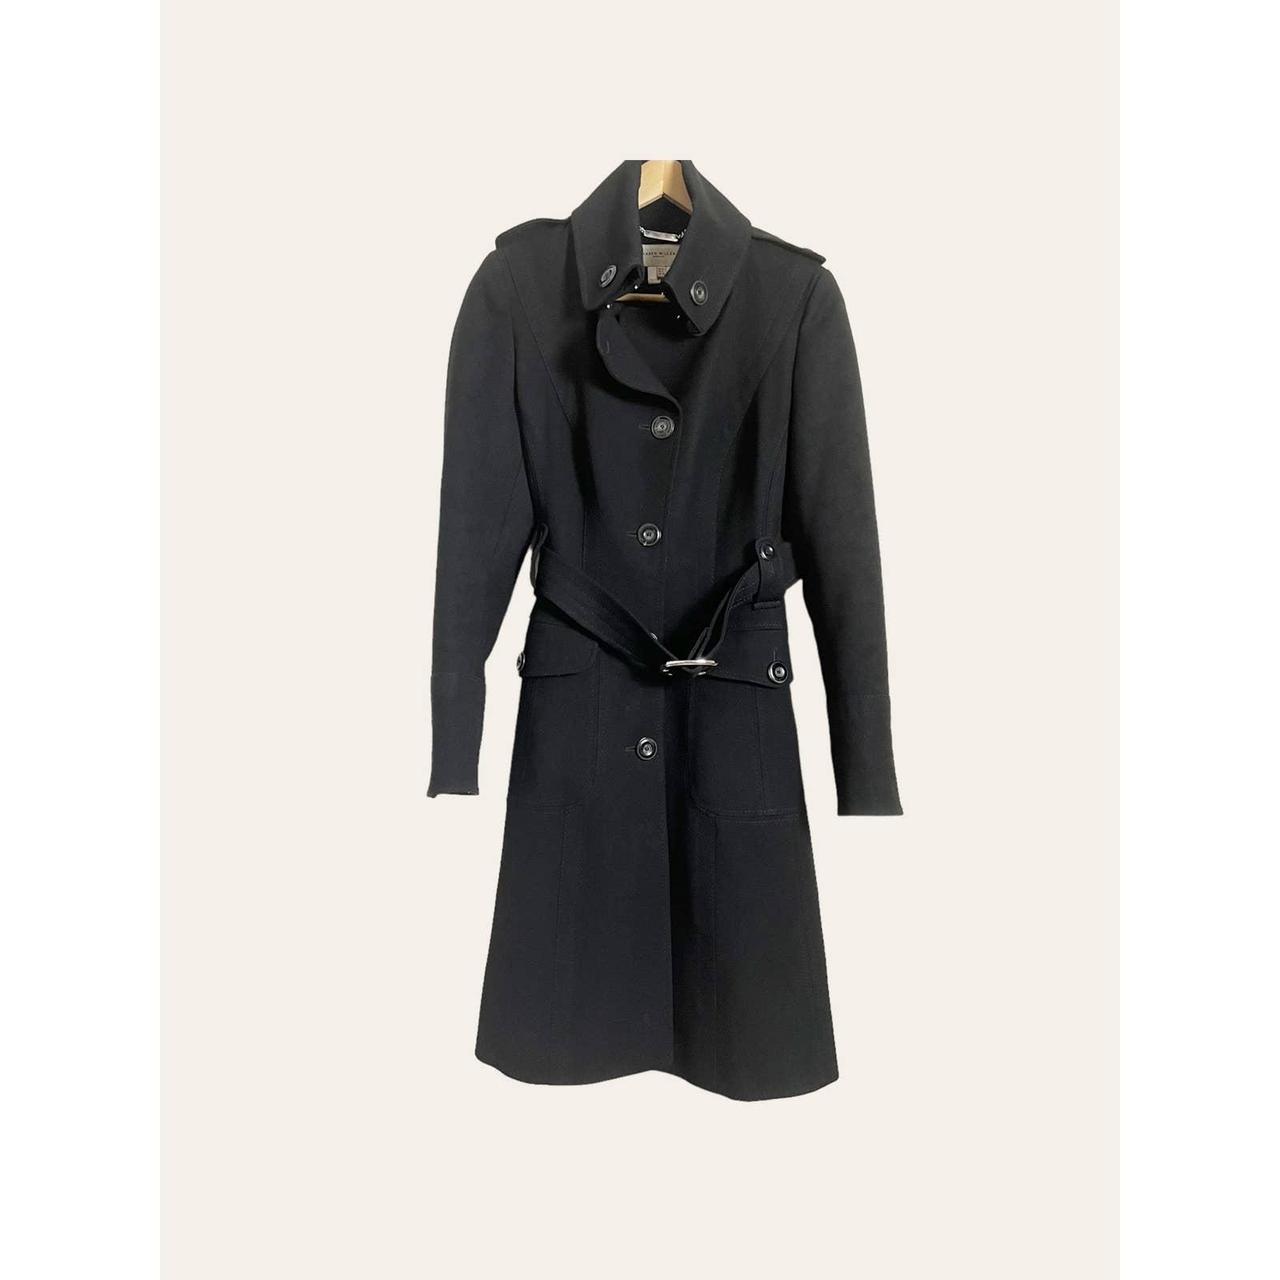 This solid black trench coat from Karen Millen is... - Depop